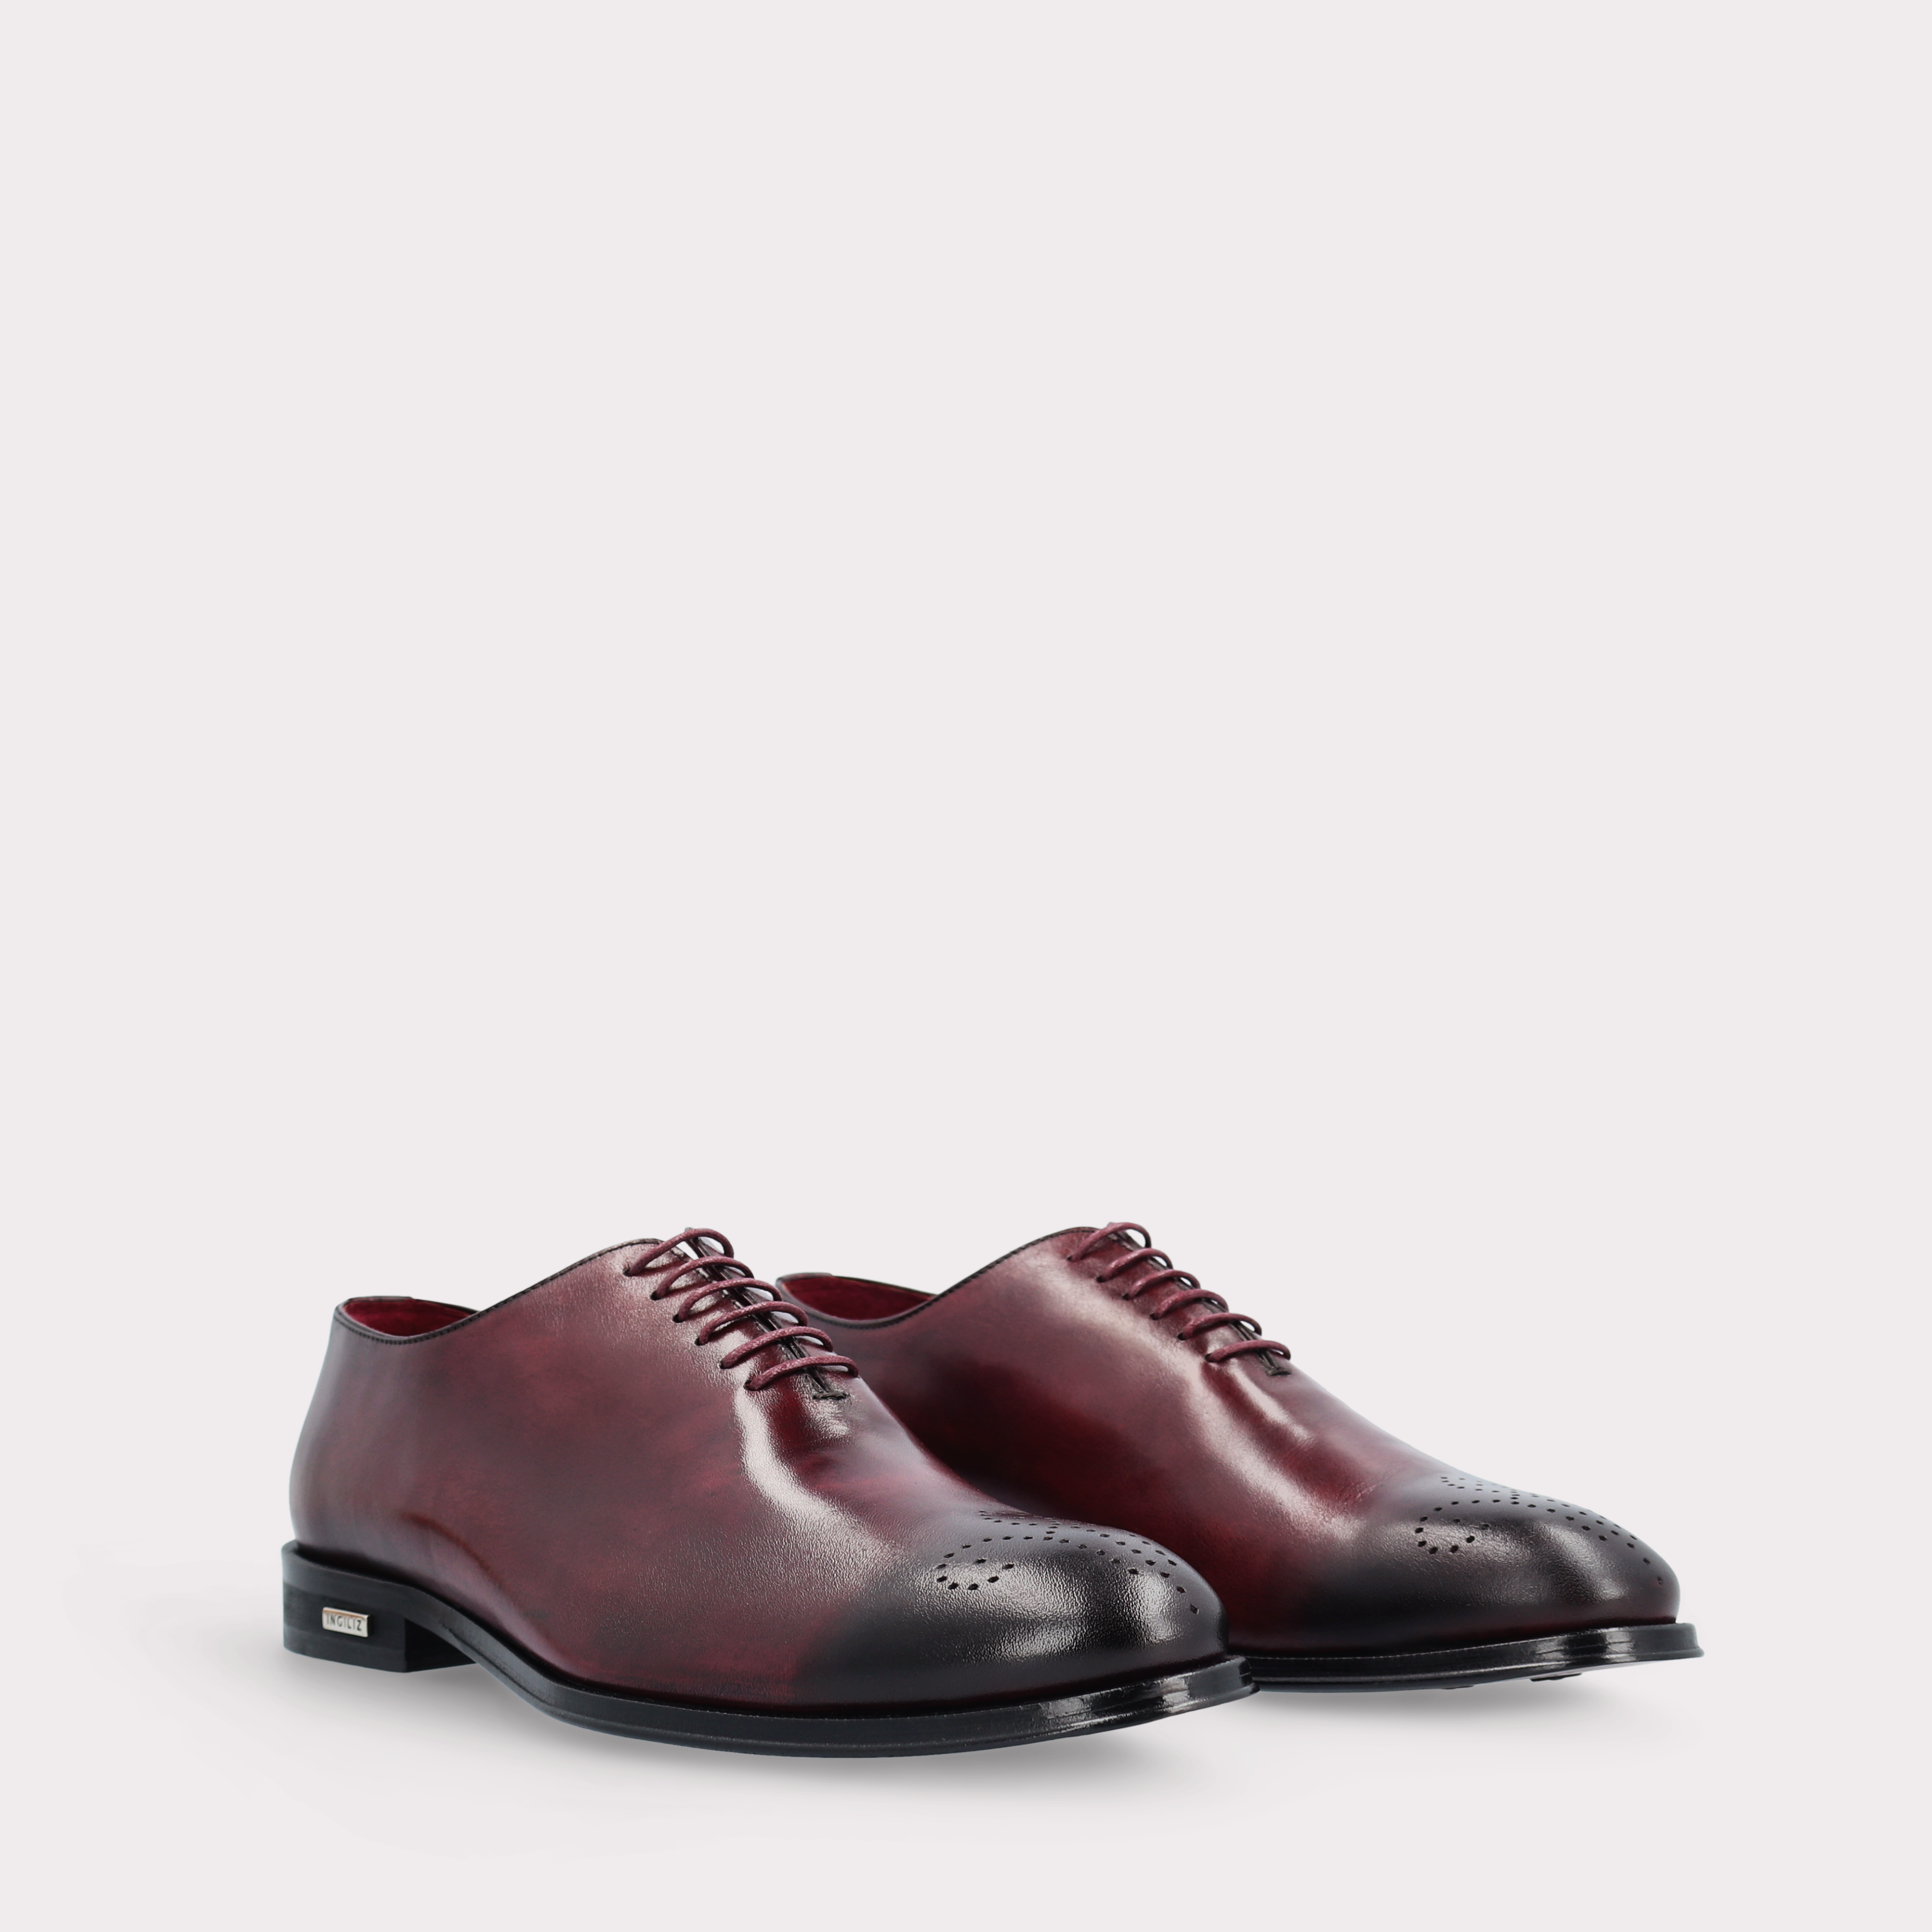 PRATO 01 bordeaux leather oxford shoes